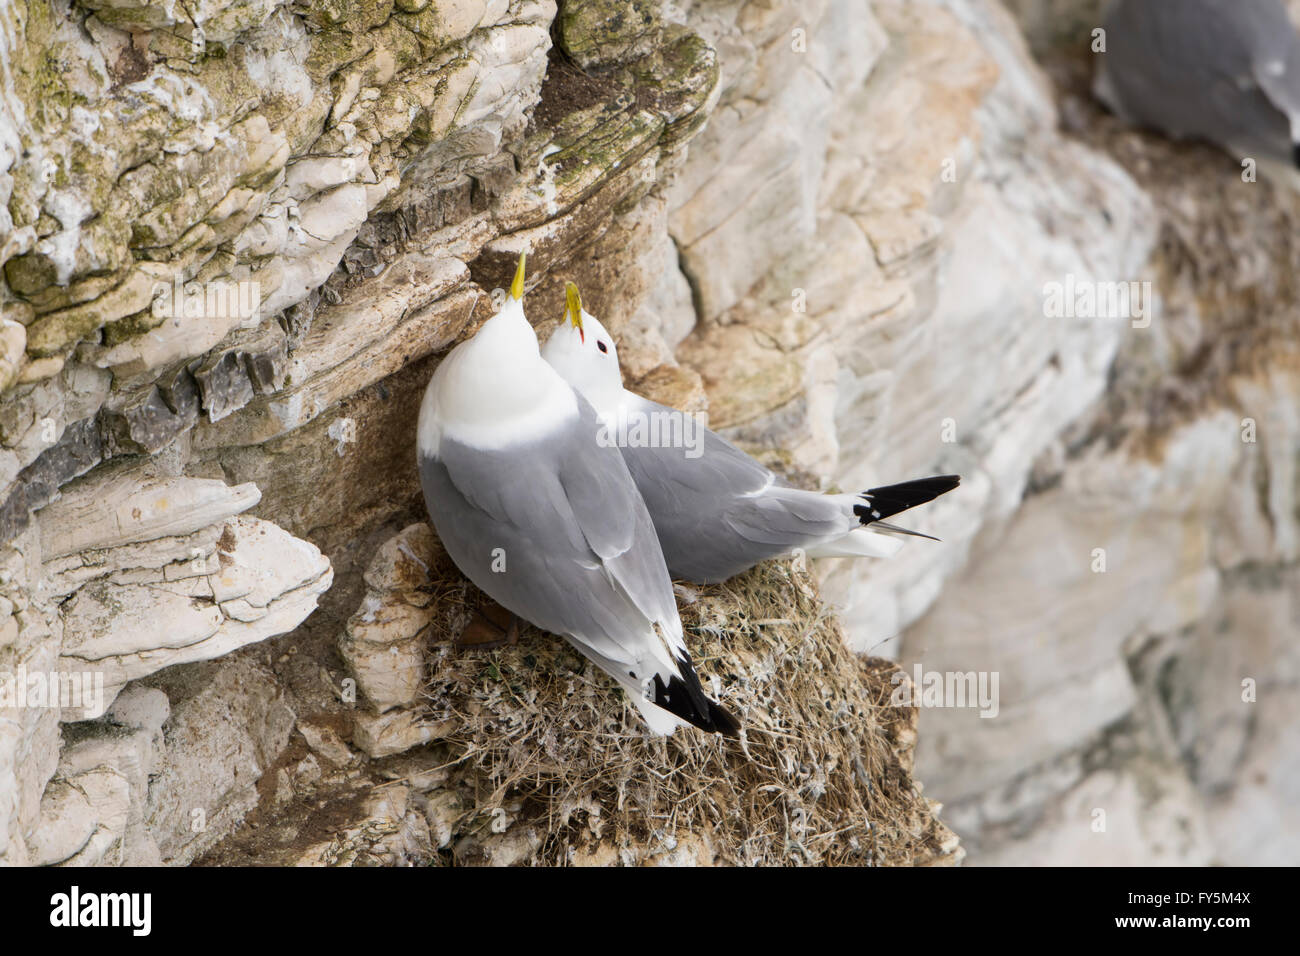 Ein paar der Dreizehenmöwe (Rissa Tridactyla) beteiligt Balz-Verhalten auf Felsvorsprung, Bempton Cliffs, East Yorkshire, UK Stockfoto